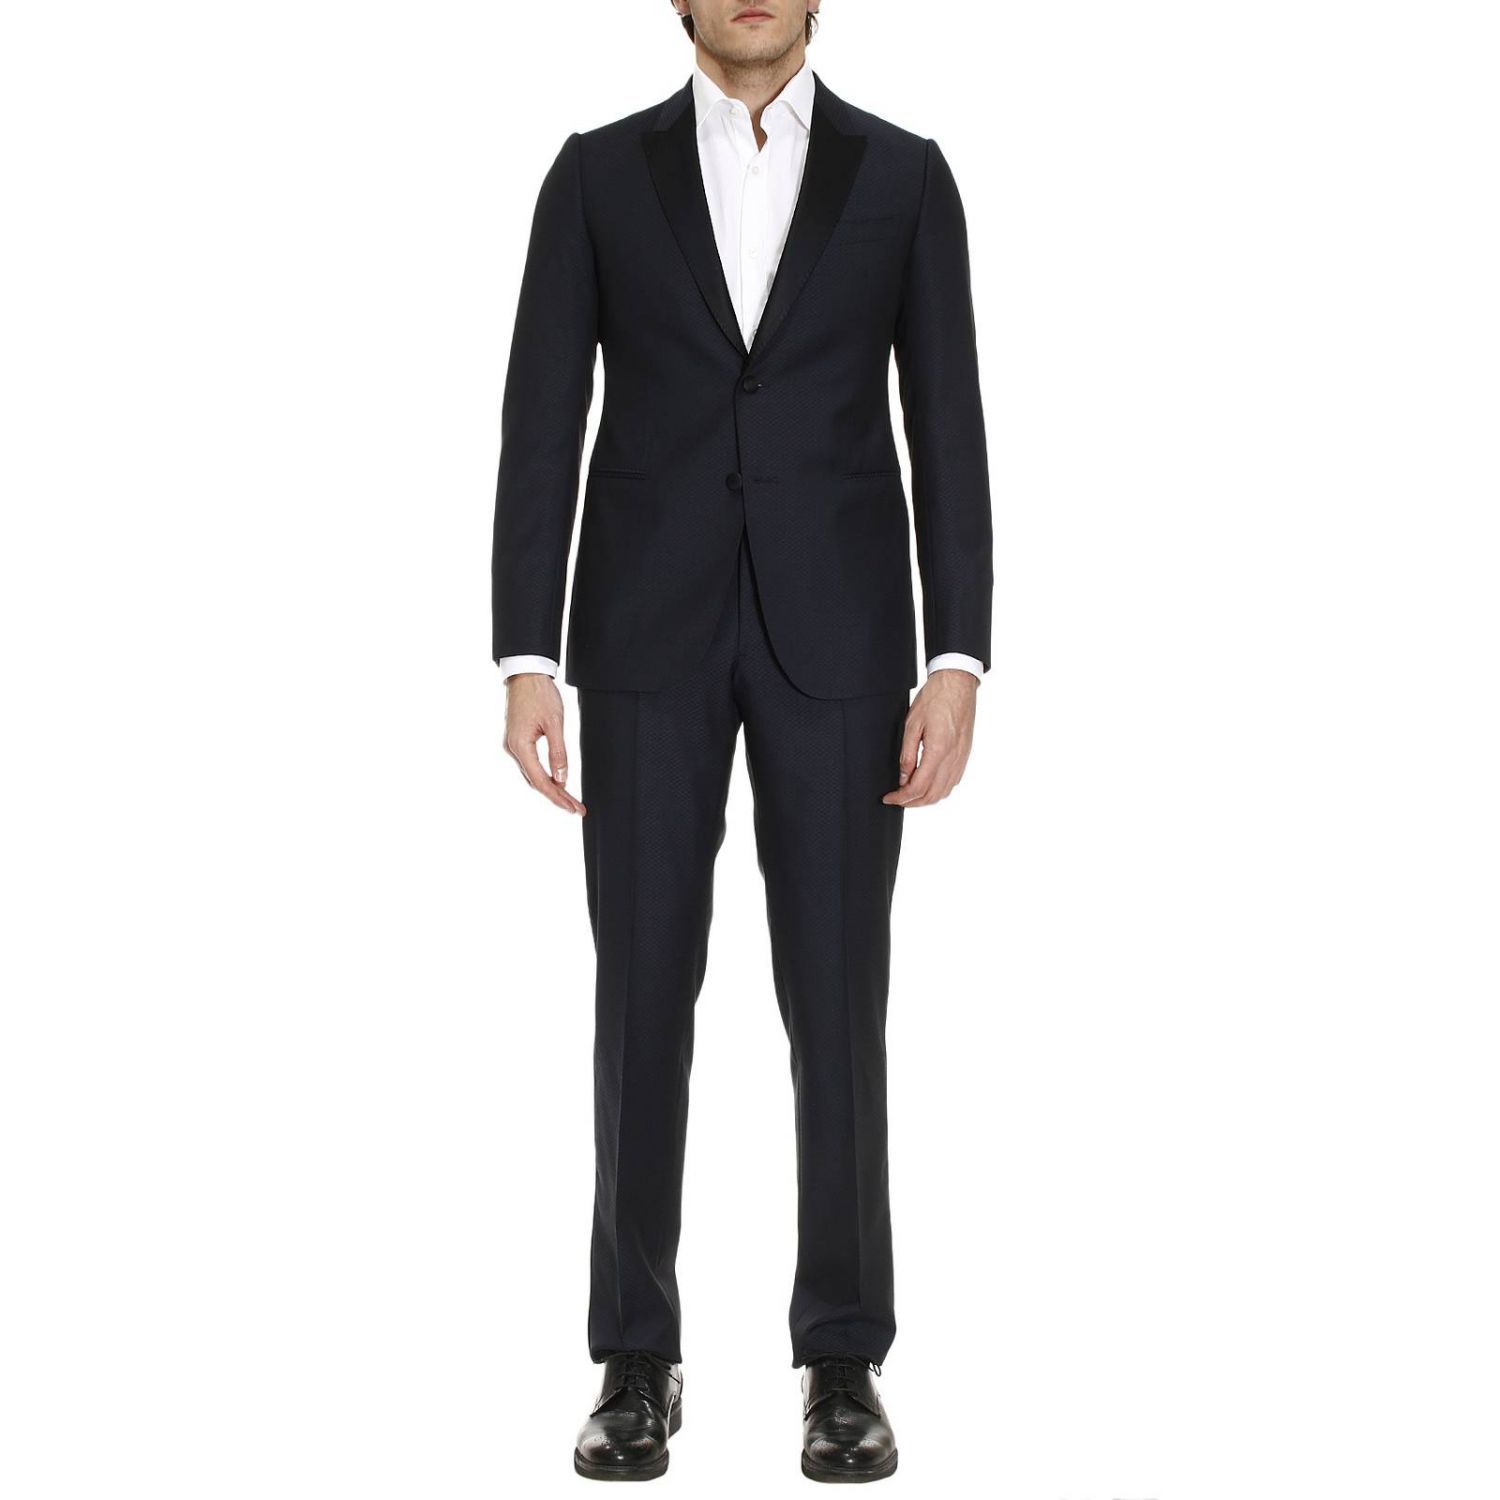 Armani Collezioni - Suit Suits Men Armani Collezioni - blue, Men's ...